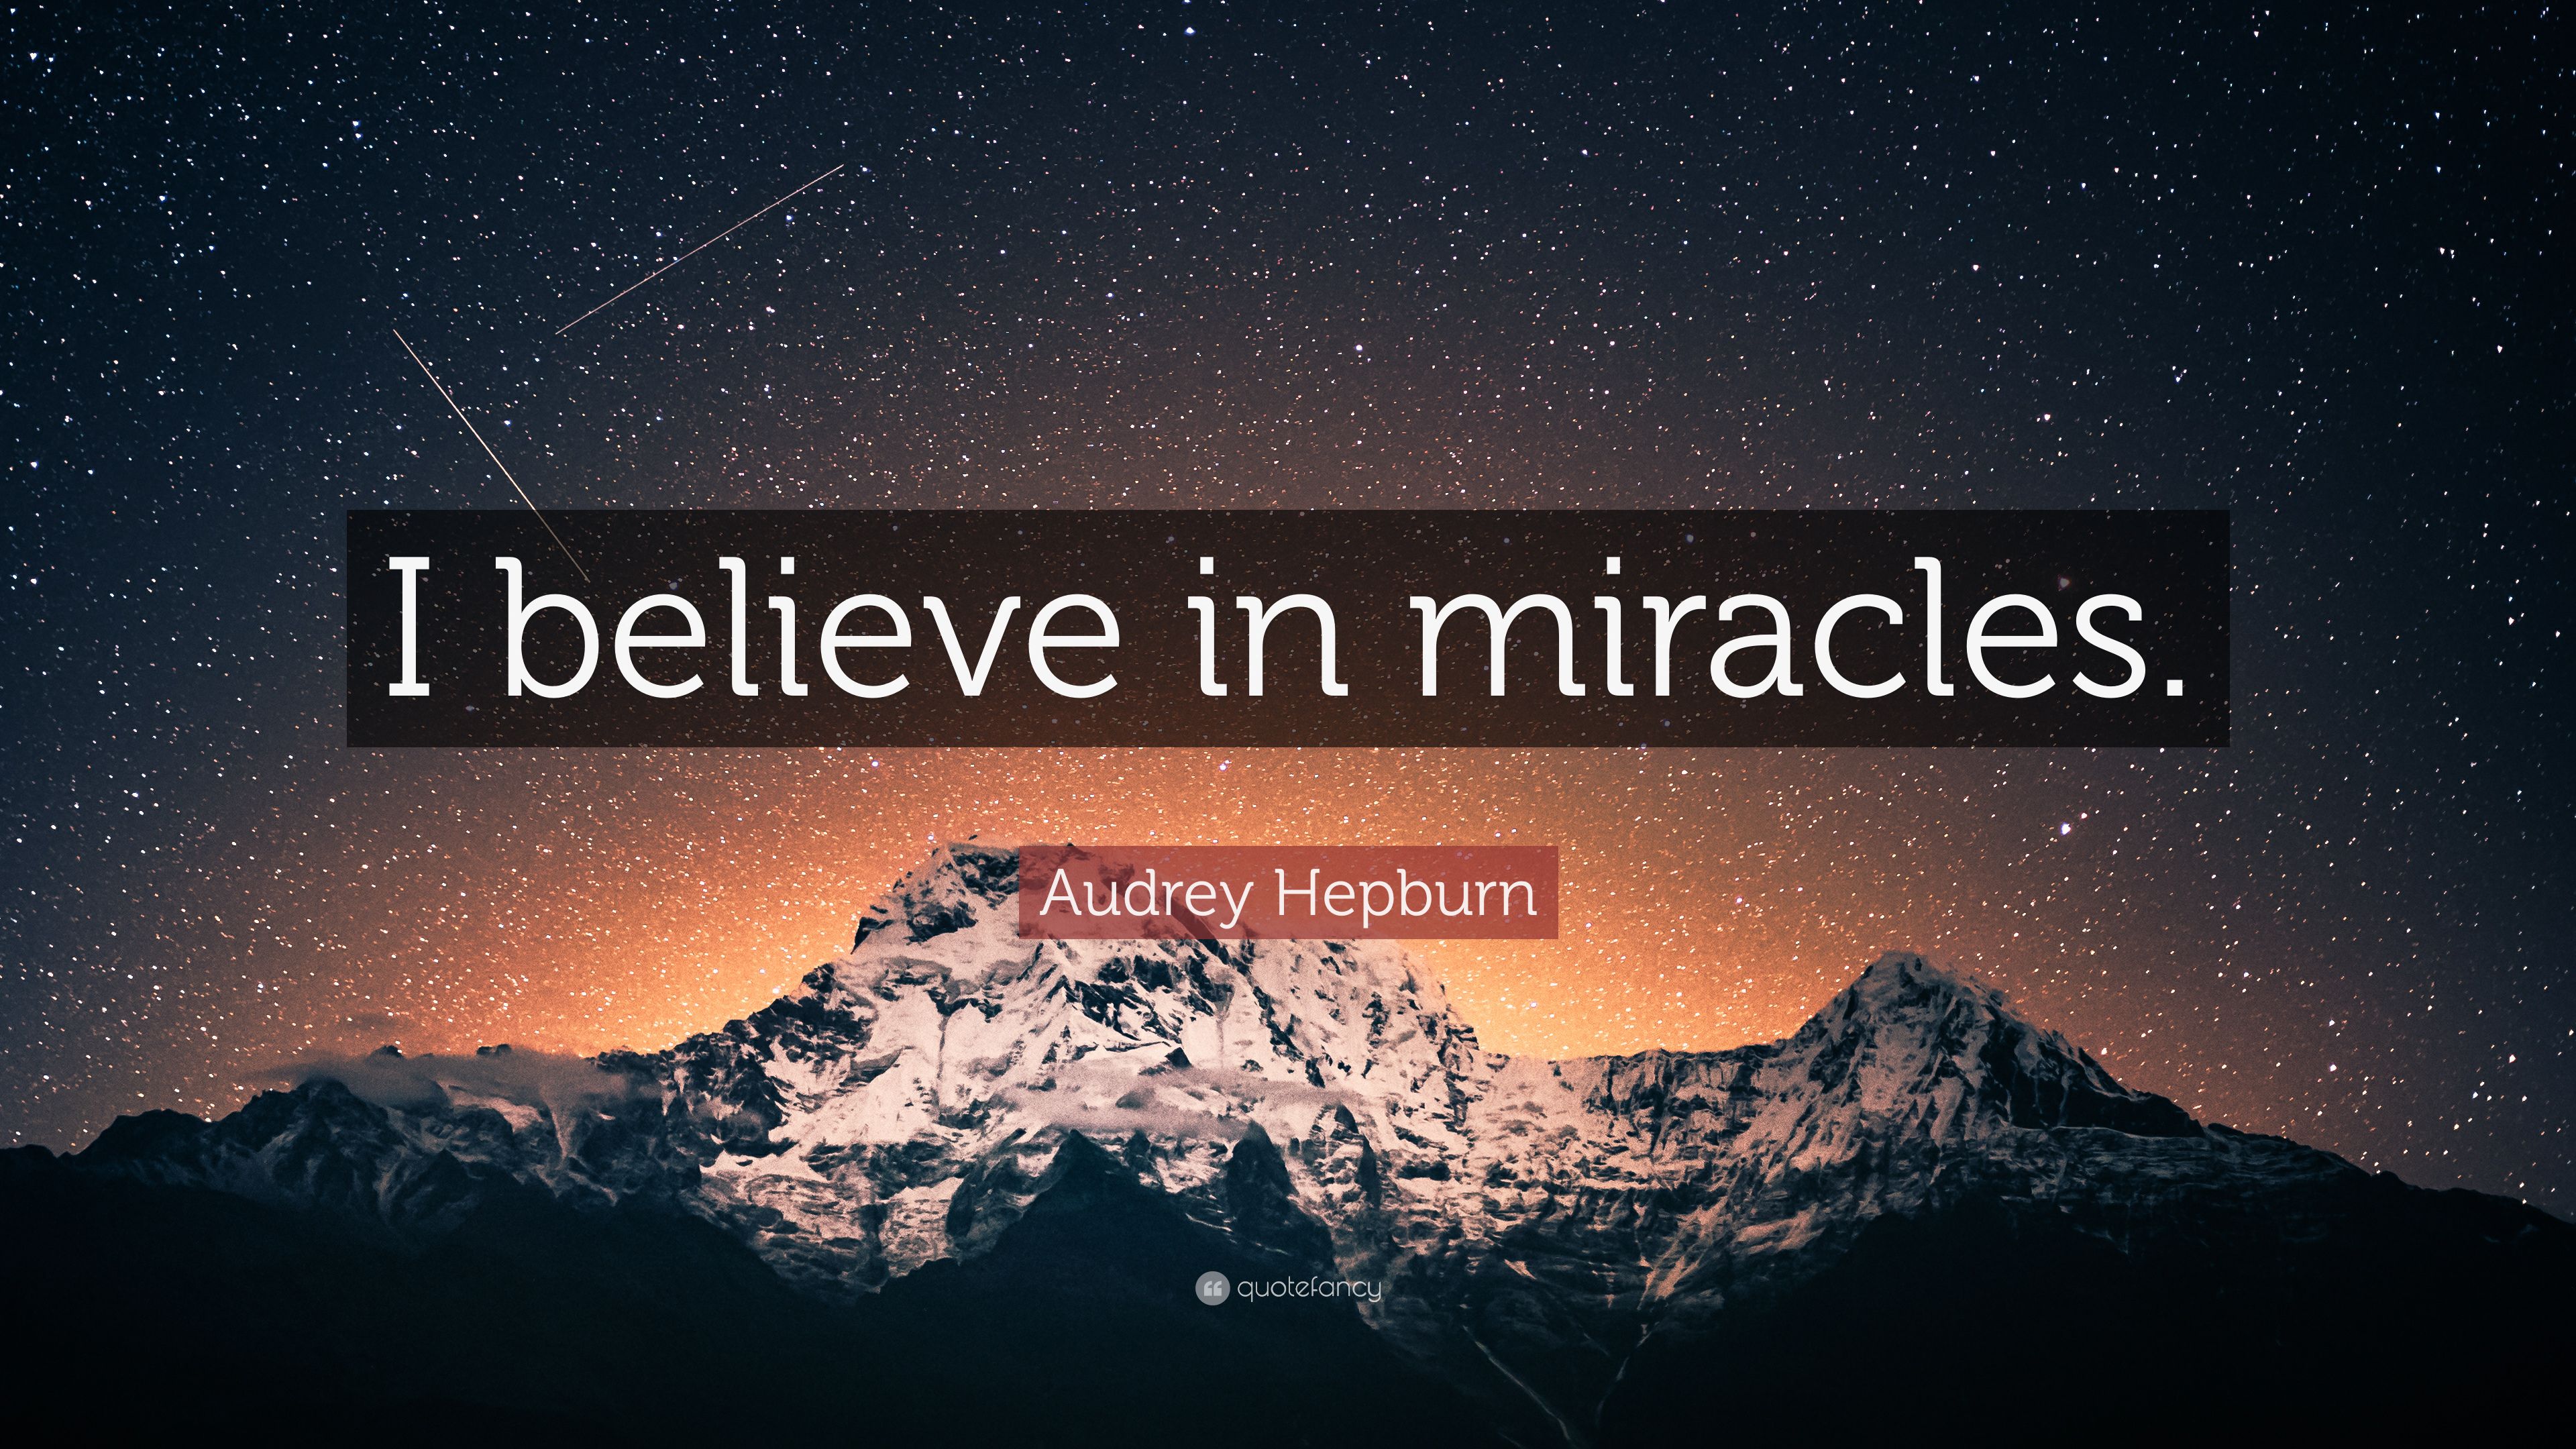 Audrey Hepburn Quote: “I believe in miracles.” (10 wallpaper)